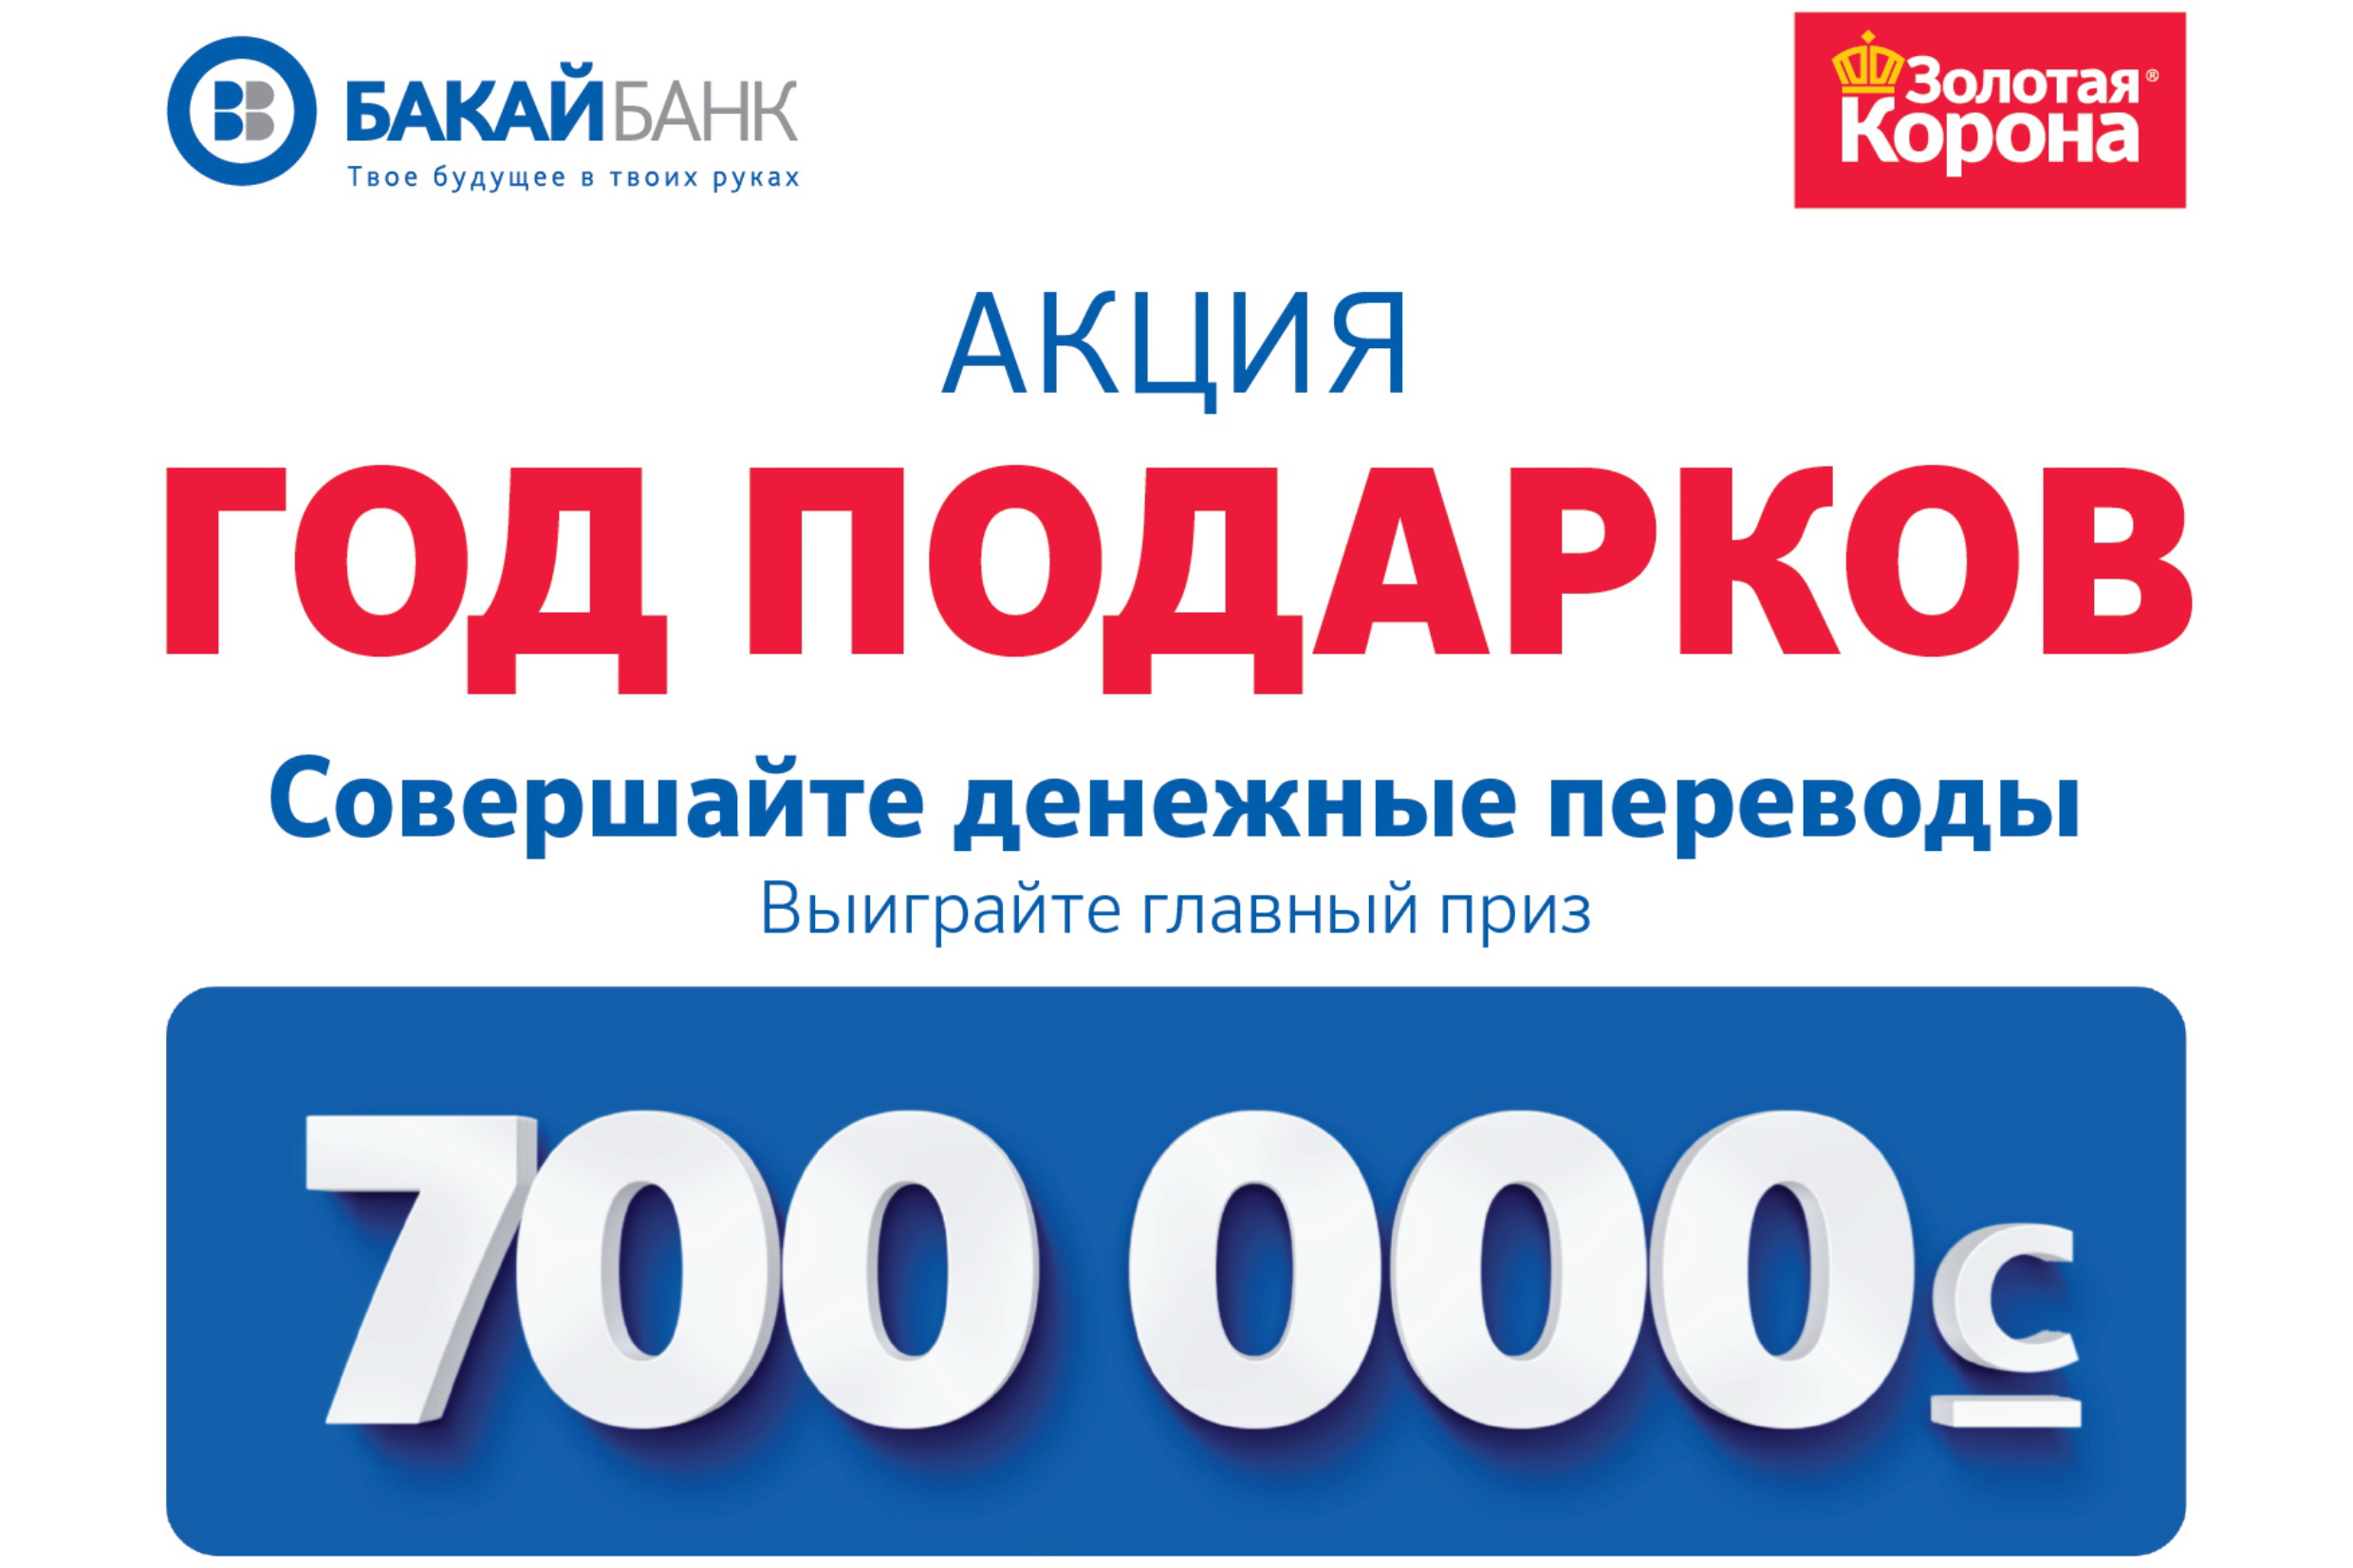 Бакай банк. Бакай банк Бишкек. Бакай банк логотип. Выиграй главный приз. Бакай банк перевод